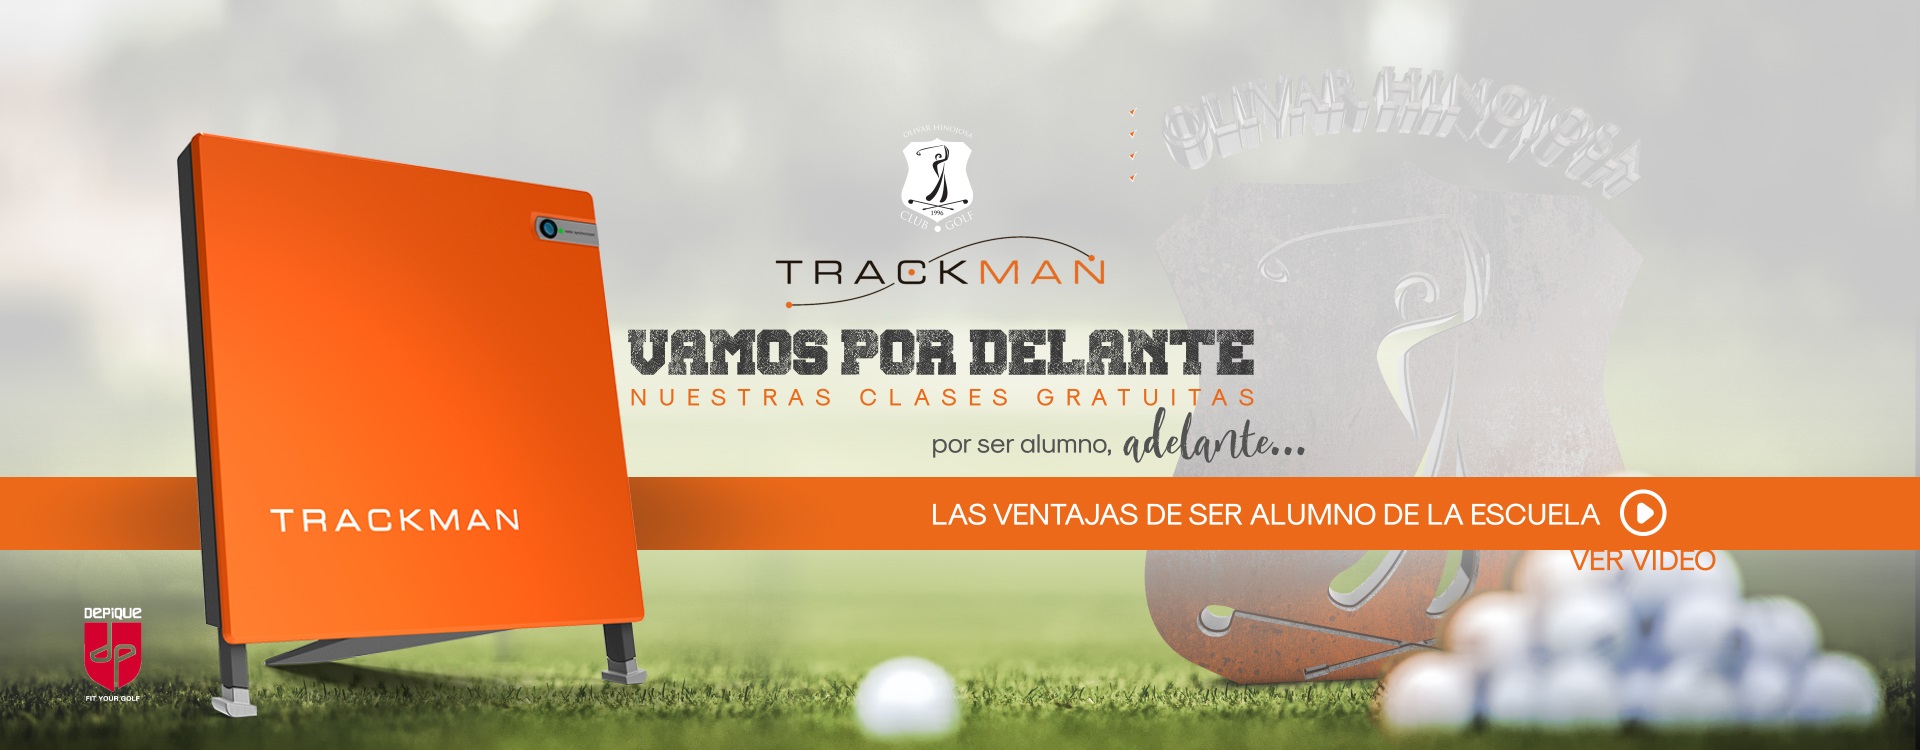 Trackman 4 Golf Radar - vídeo presentación de producto para club de golf